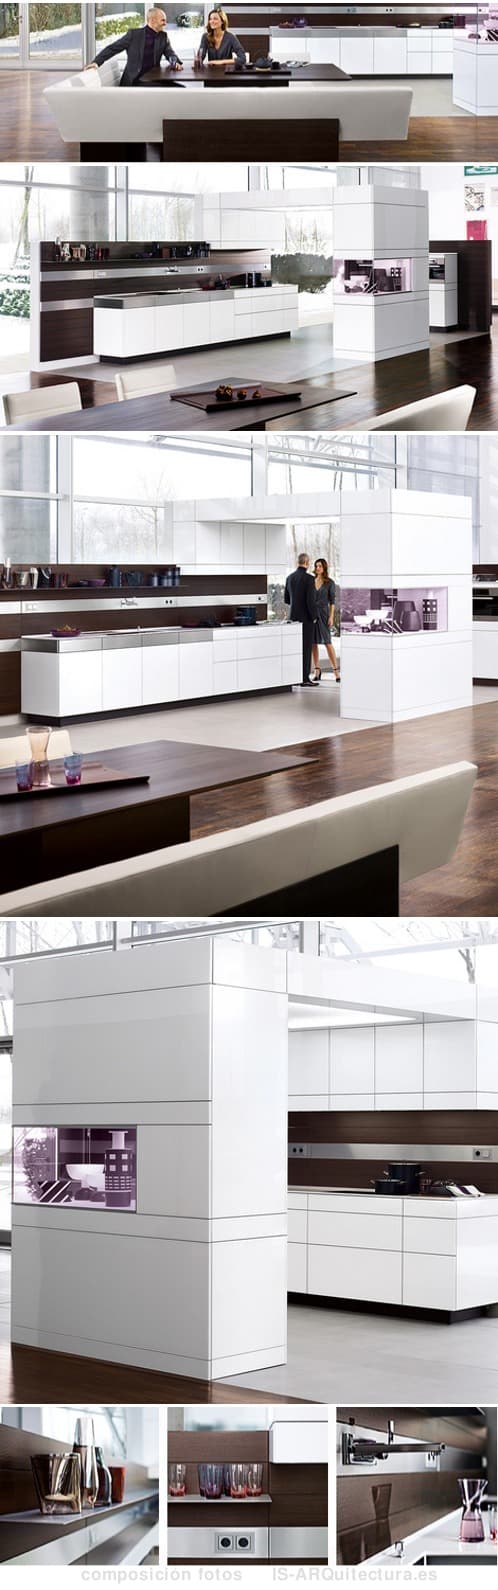 cocina arquitectonica artesio 1 +Artesio: el mueble de cocina más arquitectónico